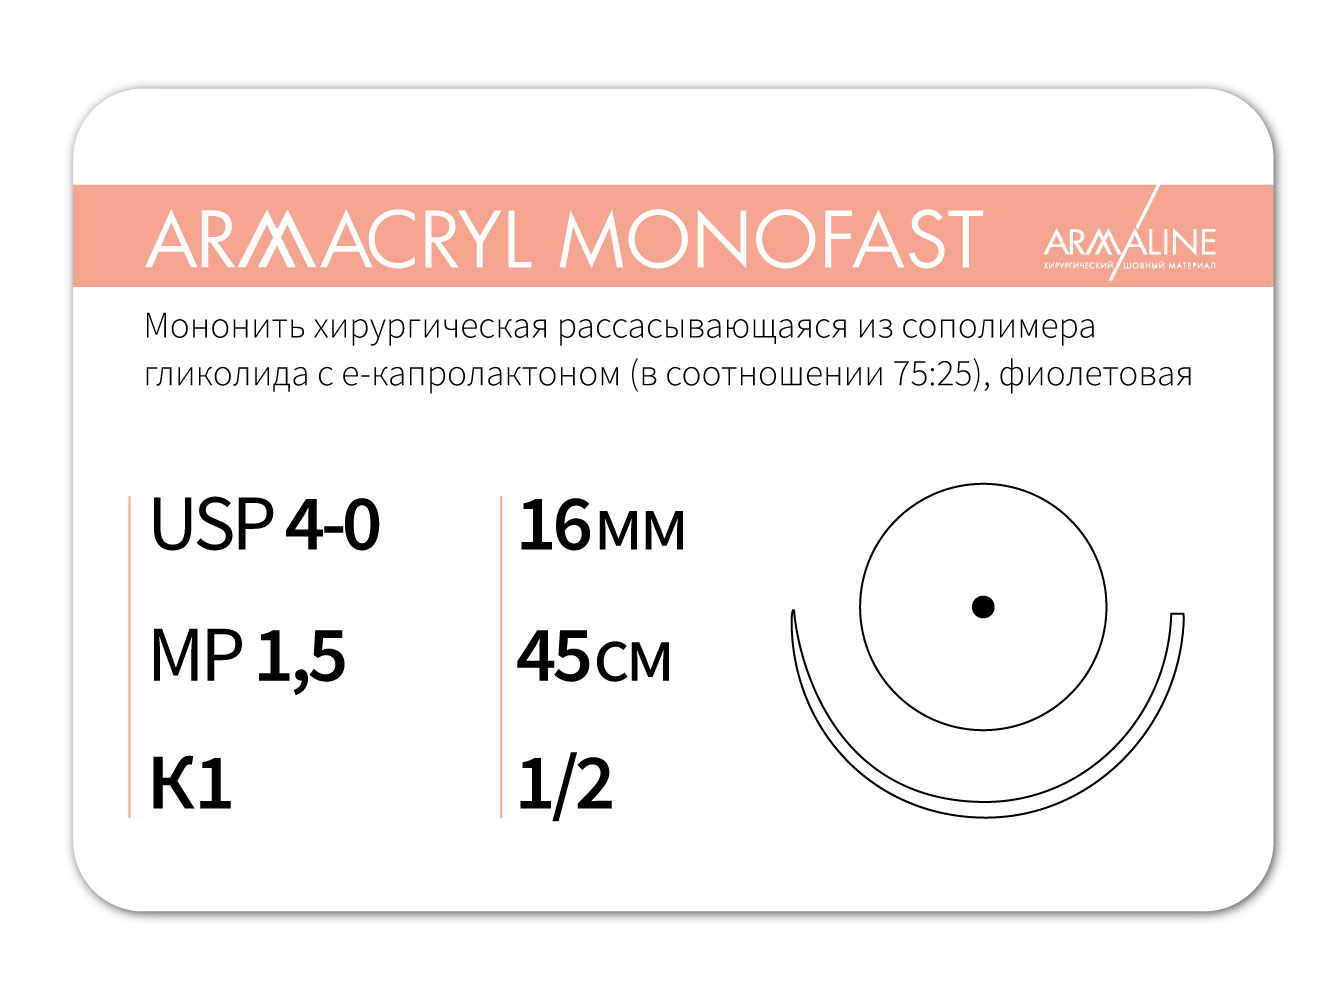 ARMACRYL MONOFAST/Армакрил монофаст (4-0) 45 см - материал хирургический шовный стерильный с атравматической колющей иглой